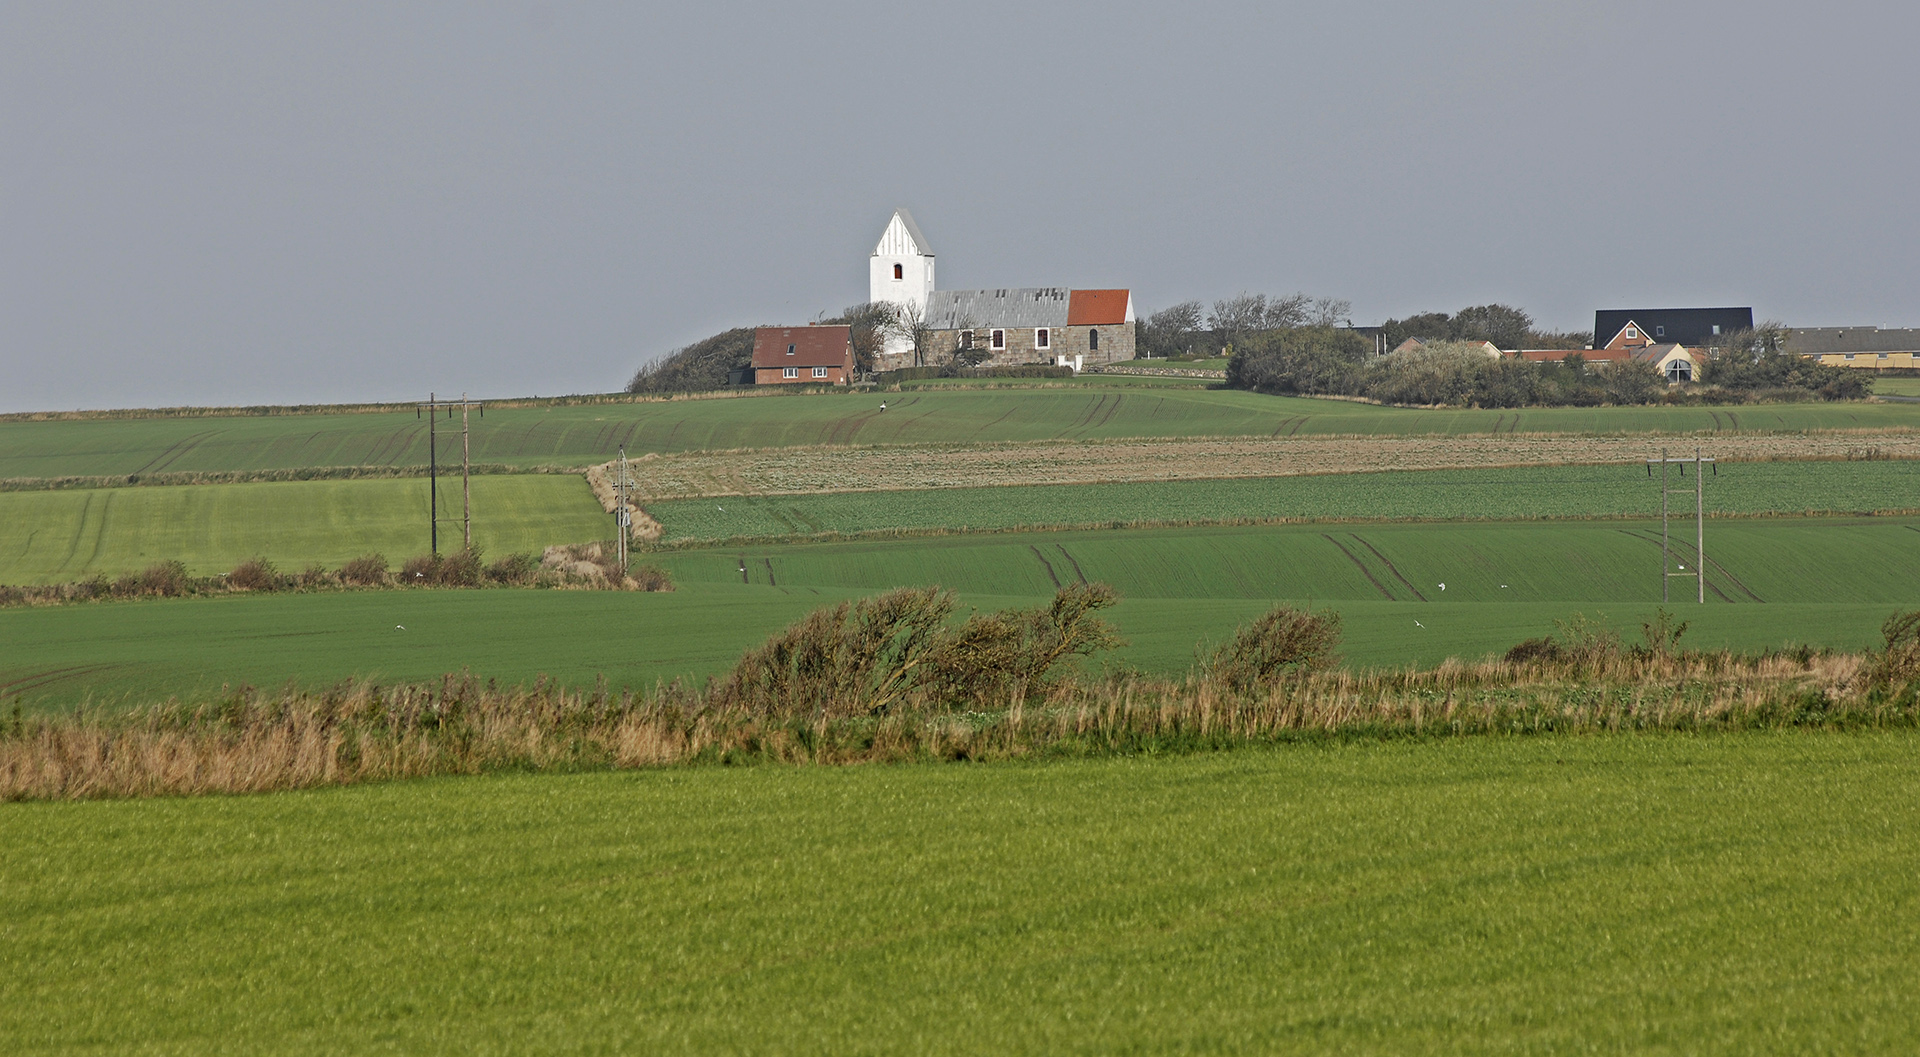 Hygum Kirke, Denmark